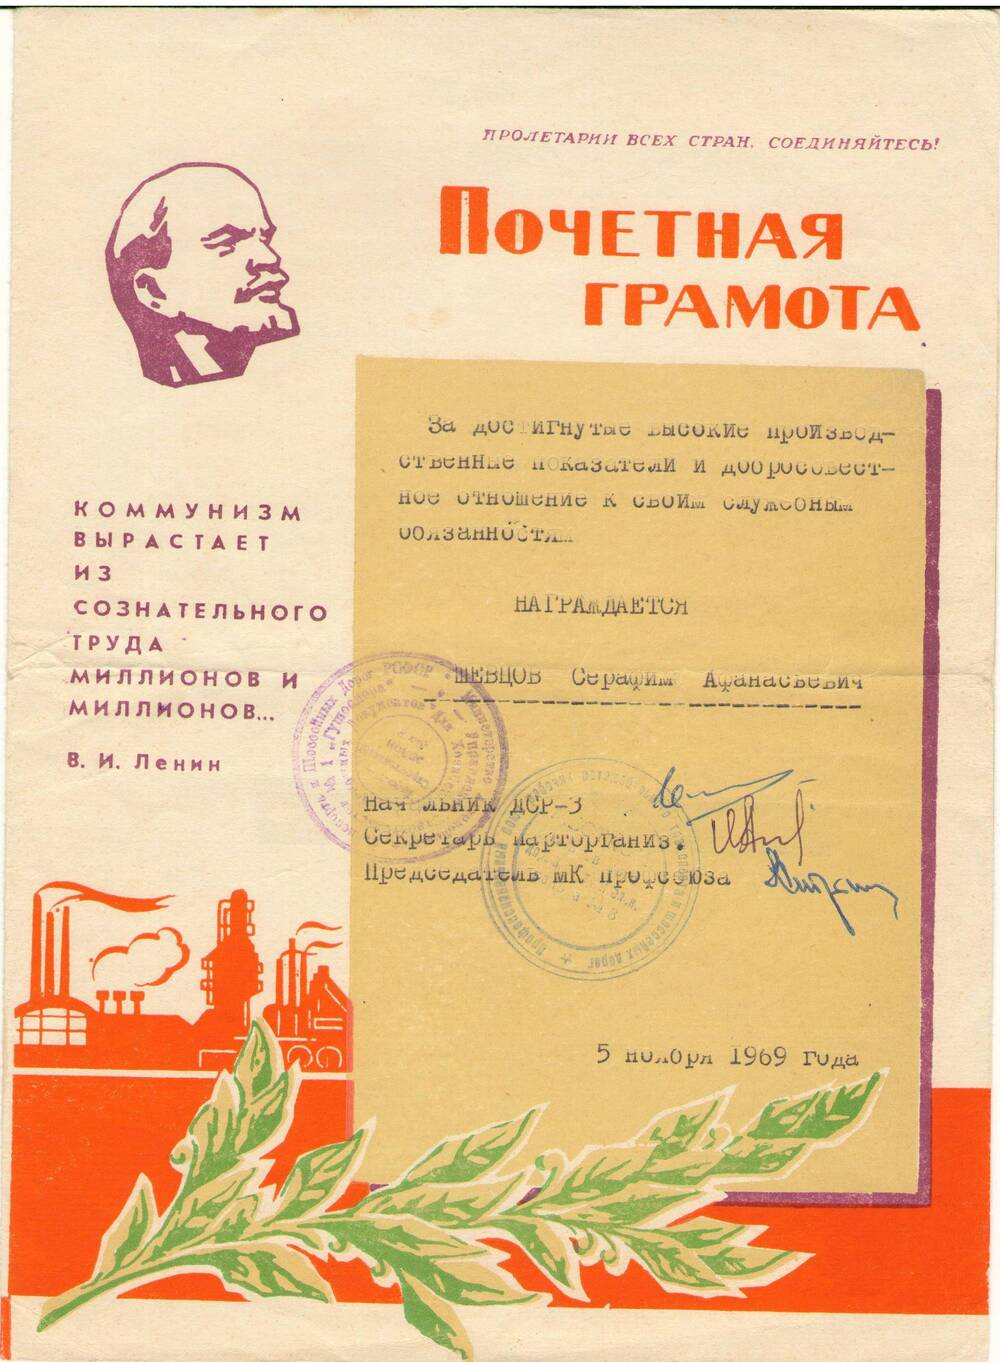 Почетная грамота Шевцову Серафиму Афанасьевичу. 5 ноября 1969 г.